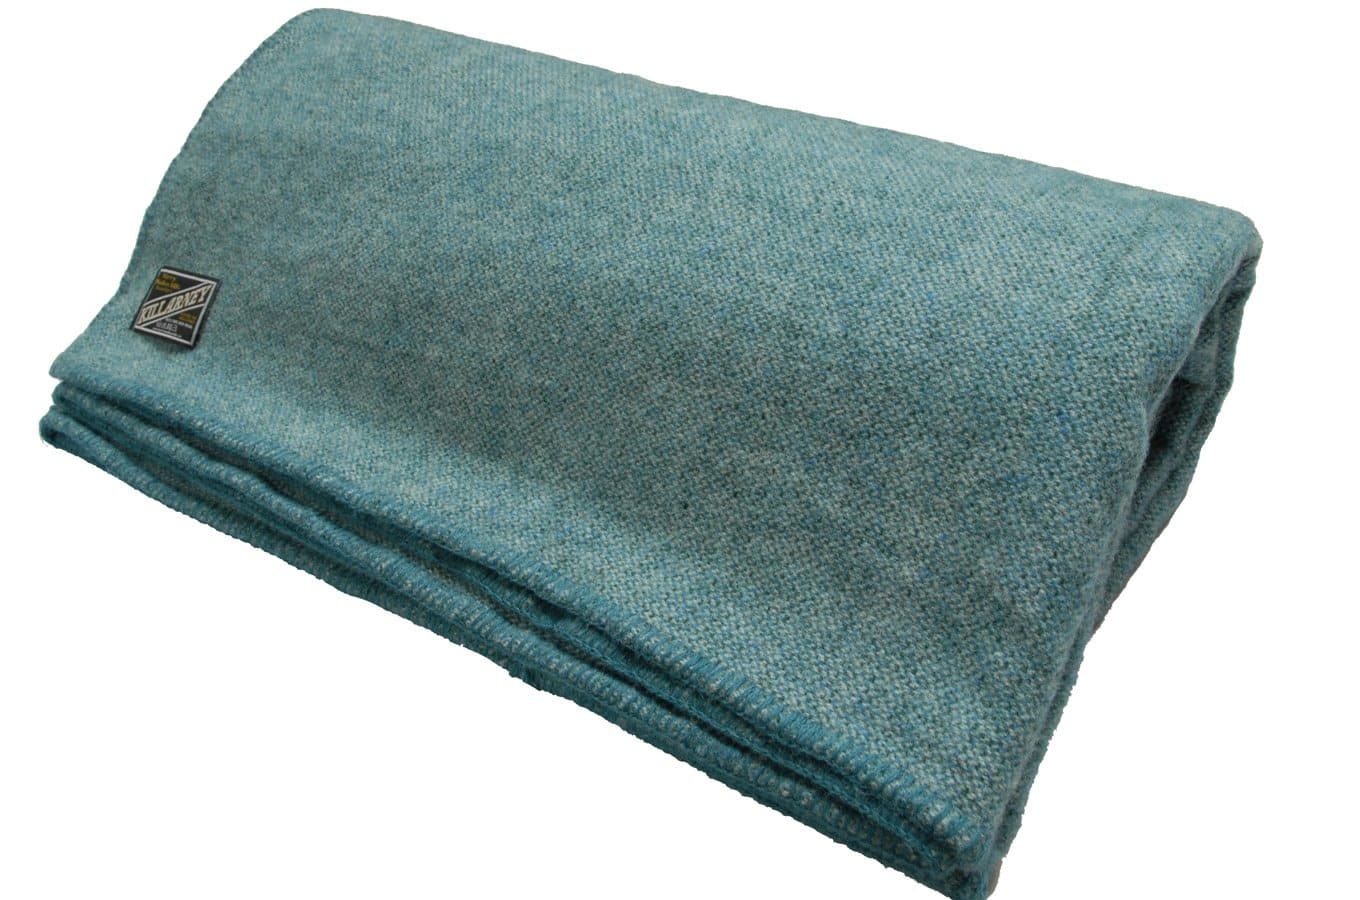 https://www.biddymurphy.com/cdn/shop/products/Blanket-wool-Emlagh-Teal-Marl.jpg?v=1616357759